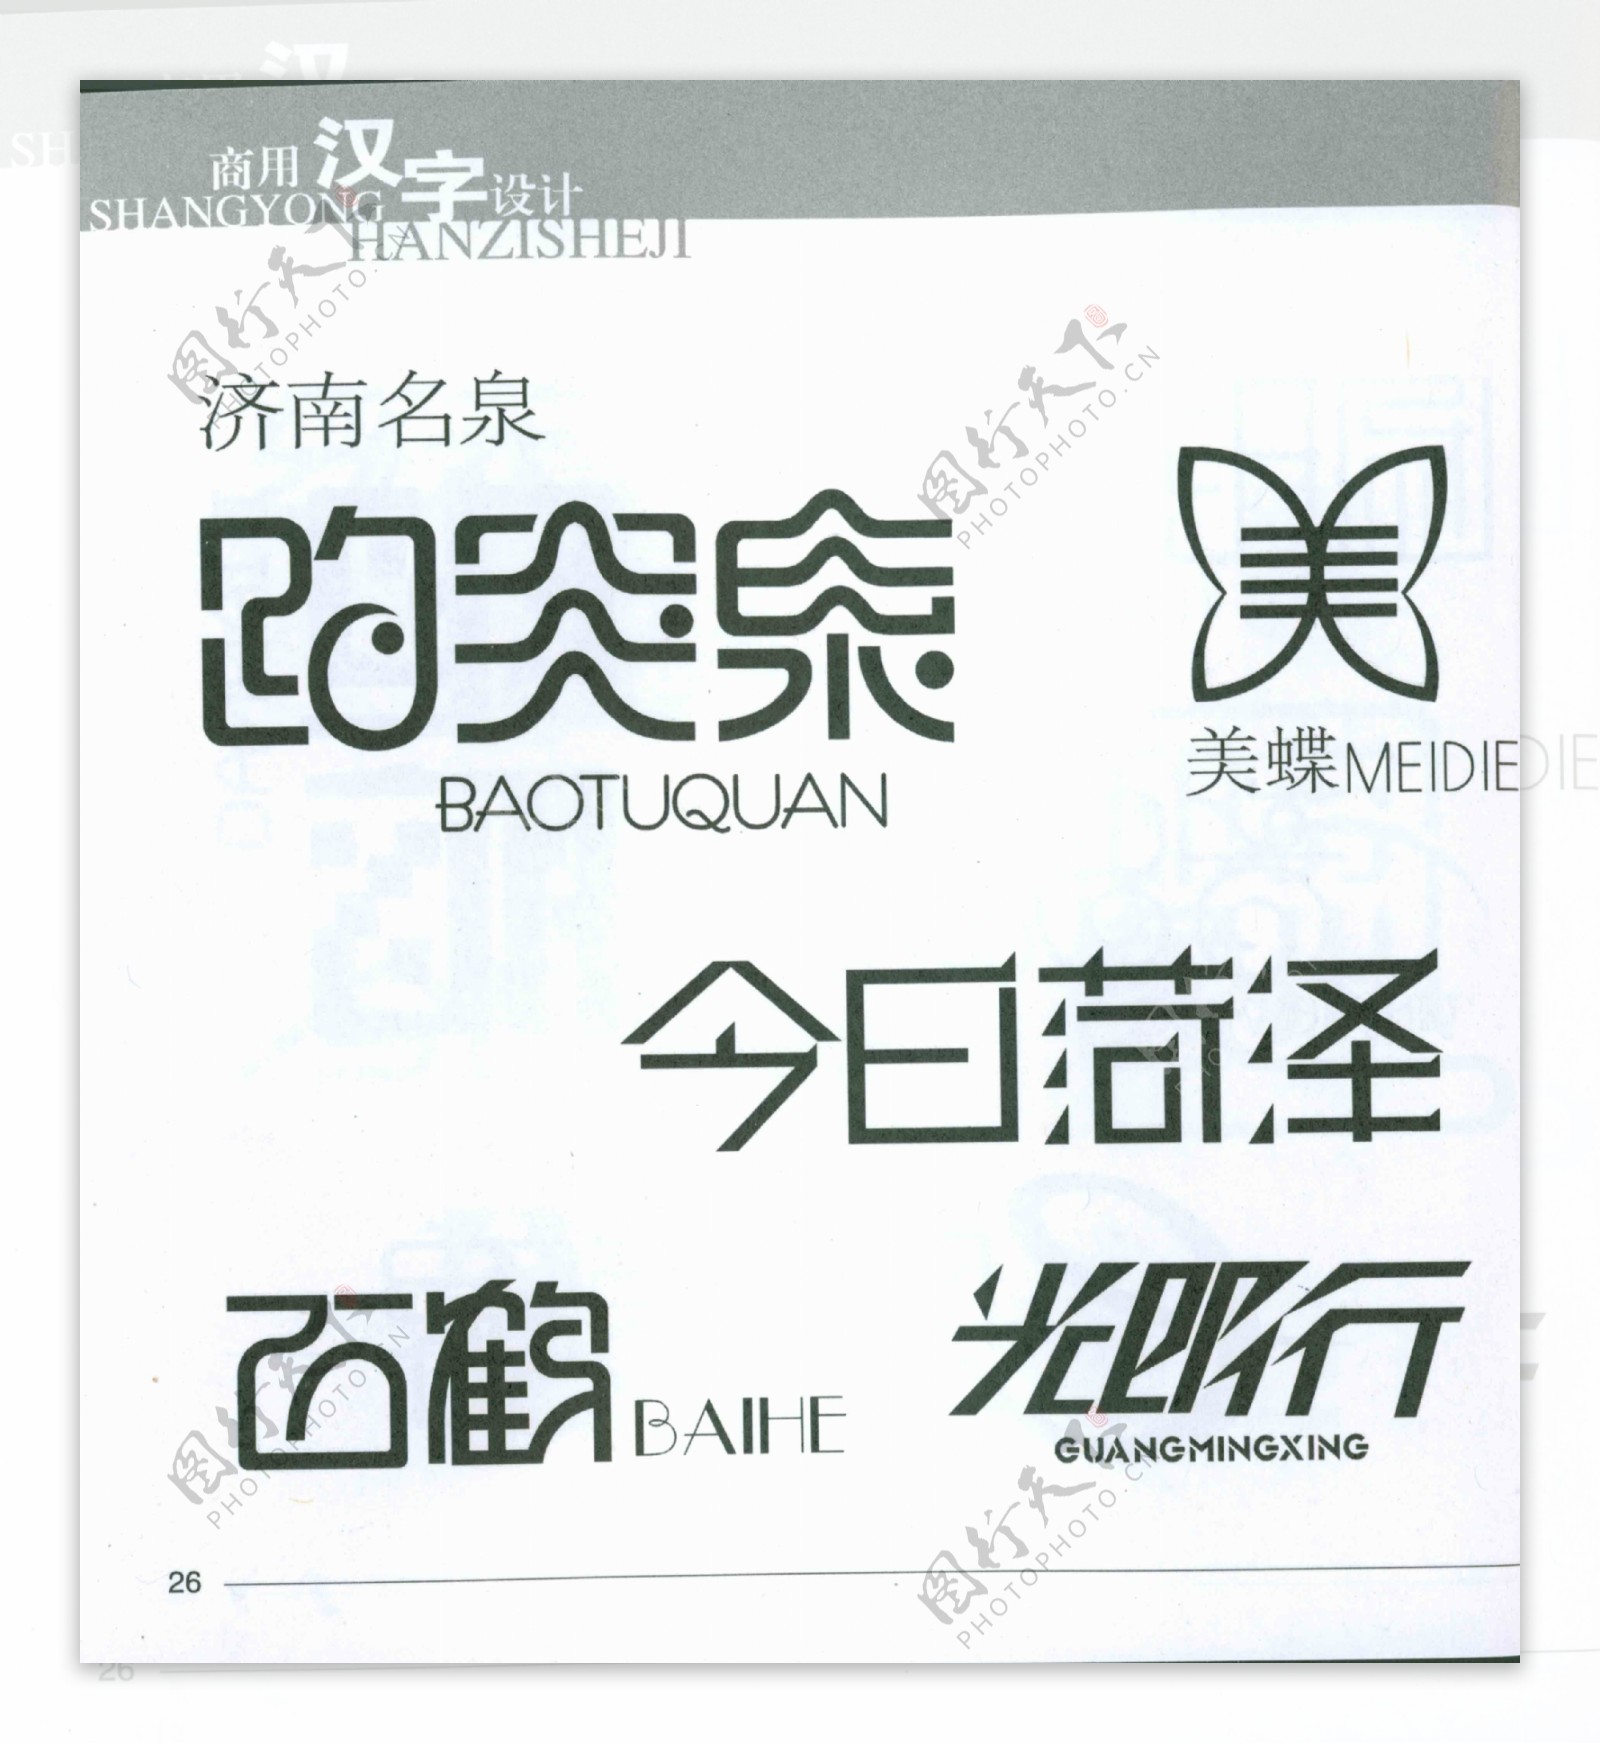 中文logo图片